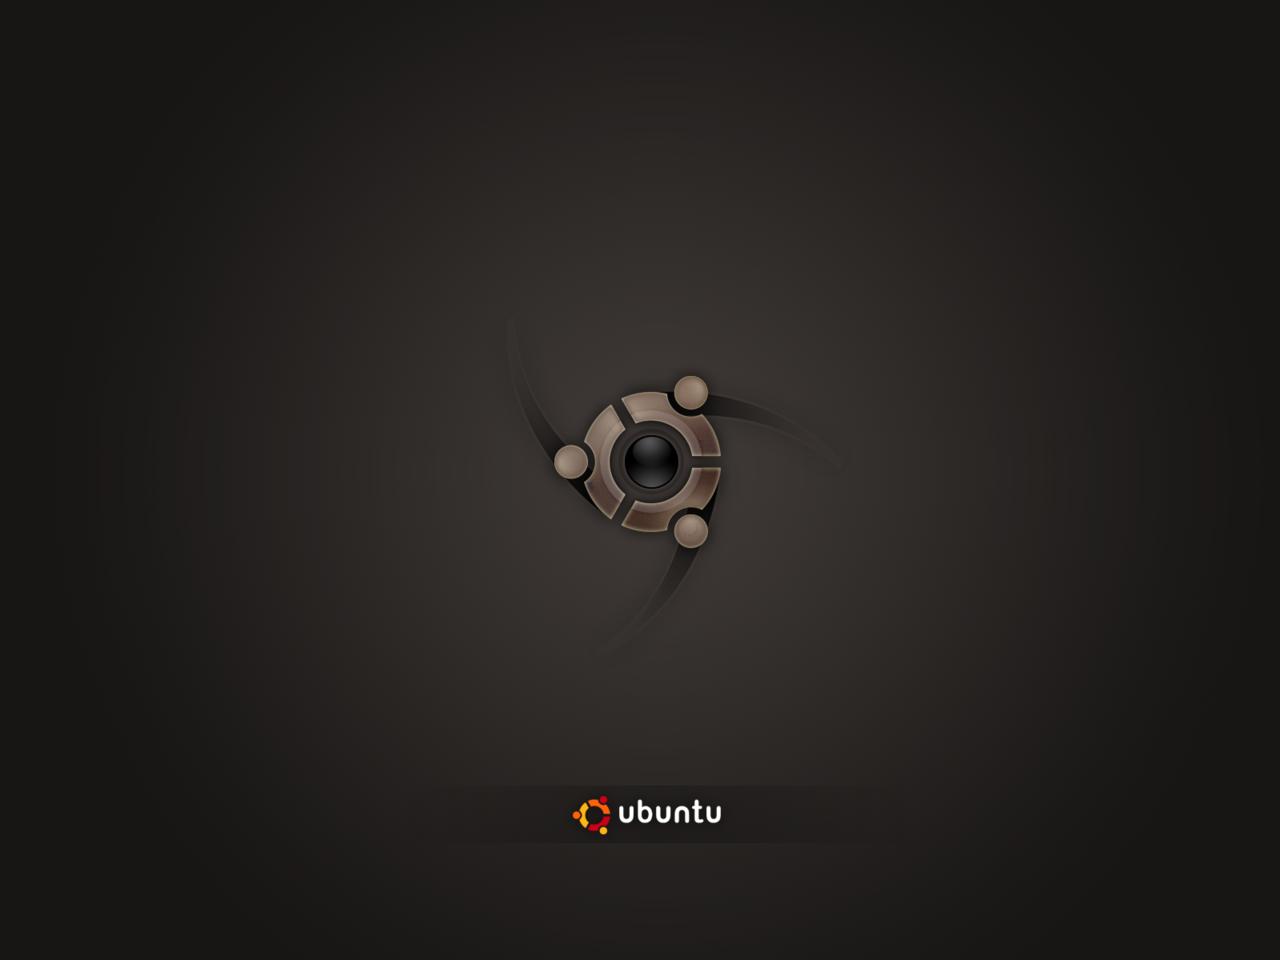 Incomplete Poster Ubuntu